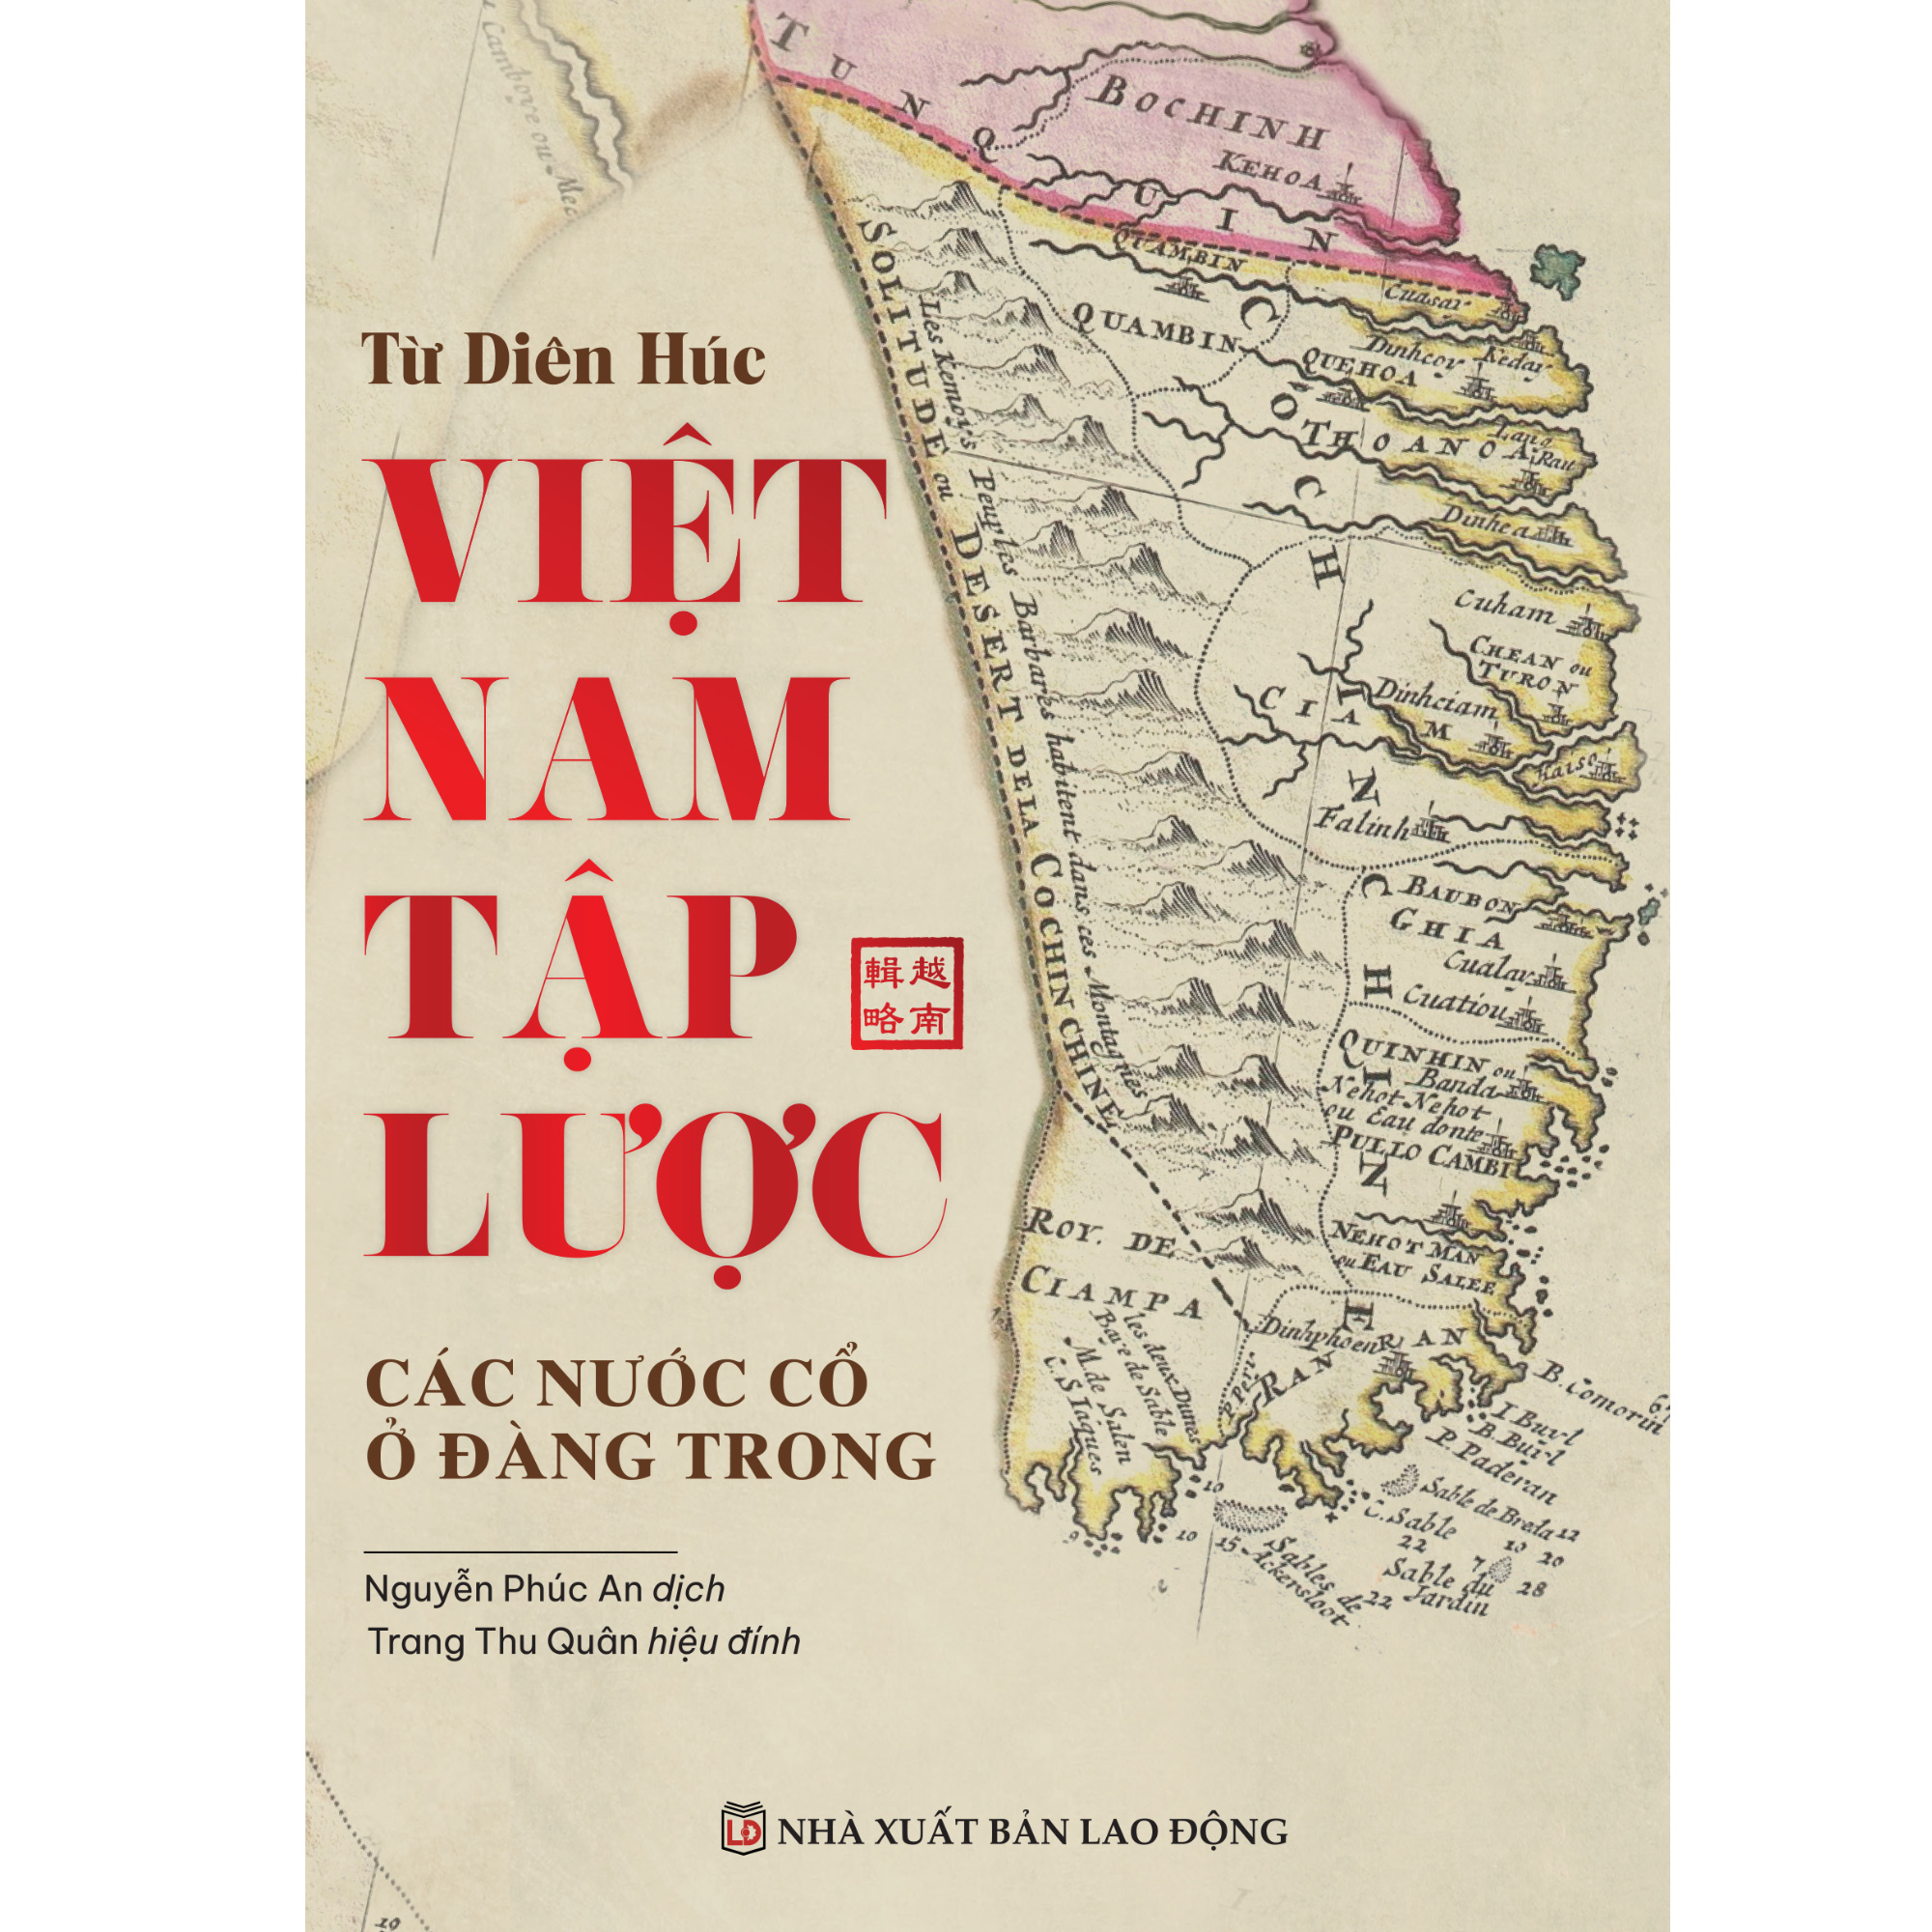 Việt Nam Tập Lược - Các Nước Cổ Ở Đàng Trong PDF